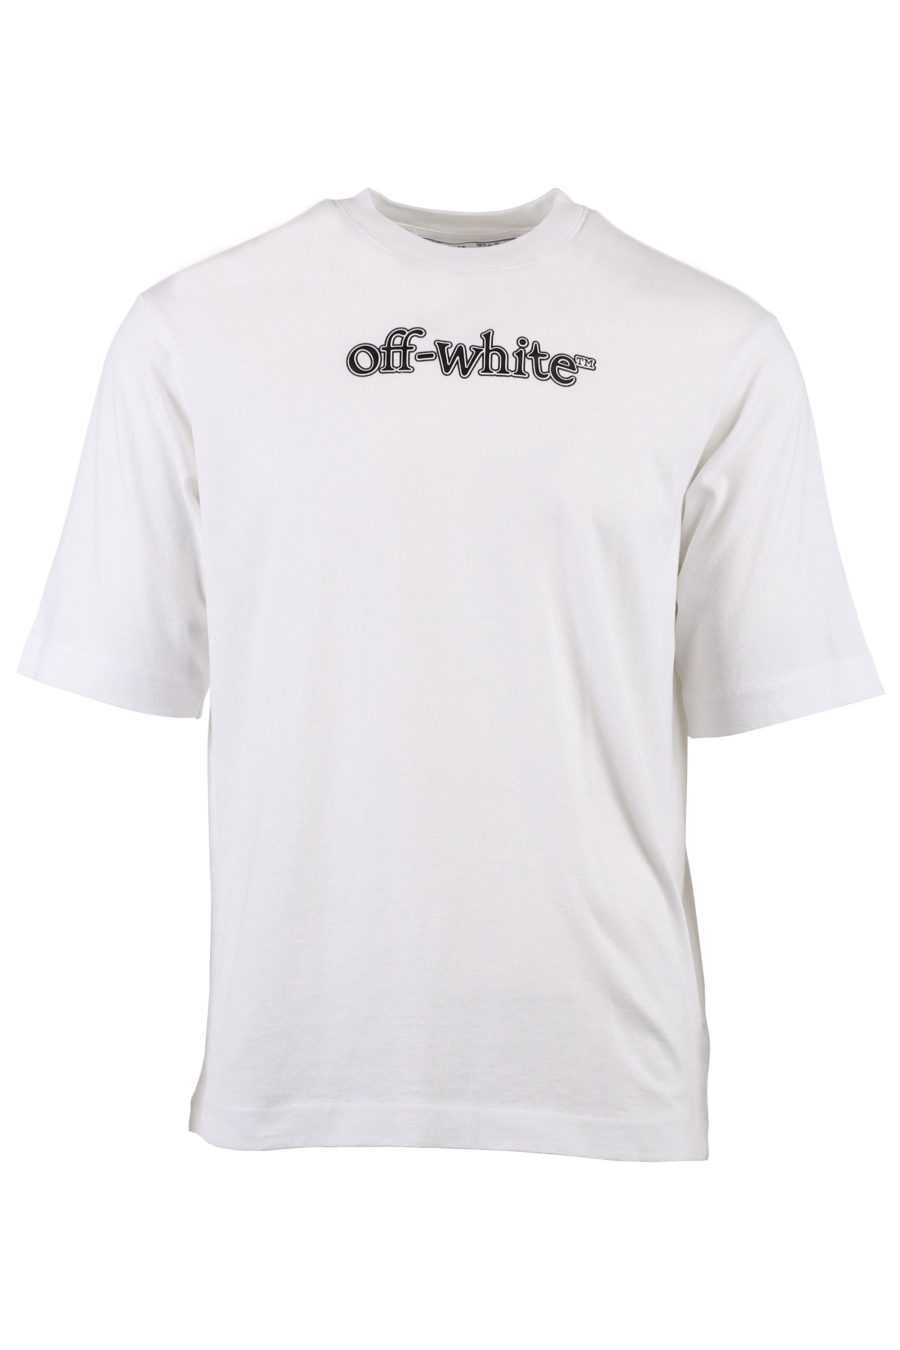 Weißes T-Shirt mit schwarzem und weißem Logo - IMG 1354 m